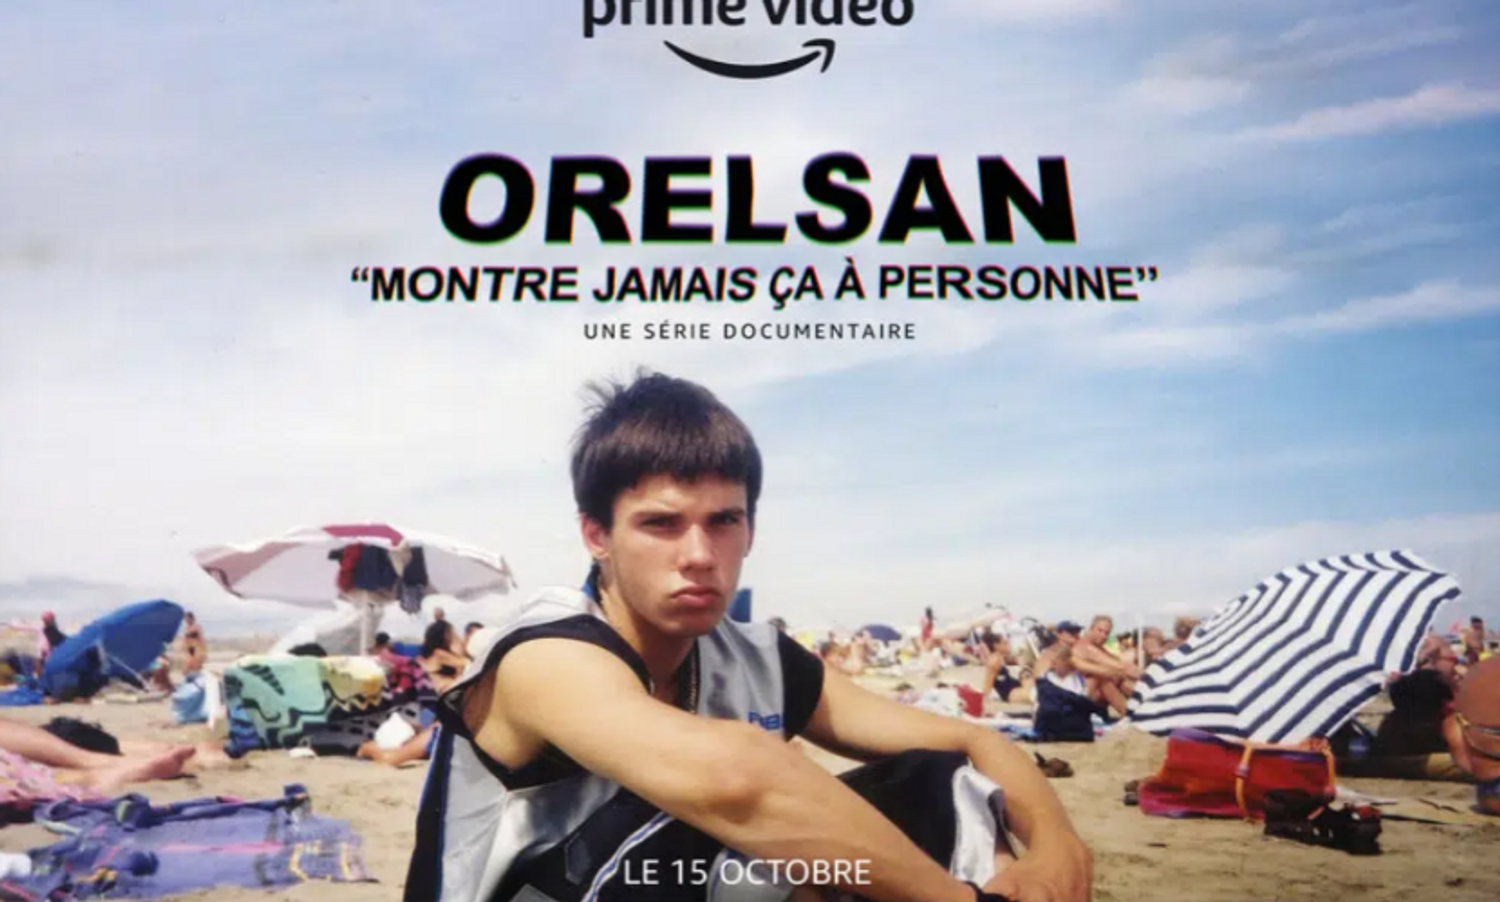 [ ARTISTE ]: Orelsan sera la star d’un documentaire intitulé “montre jamais ça à personne”